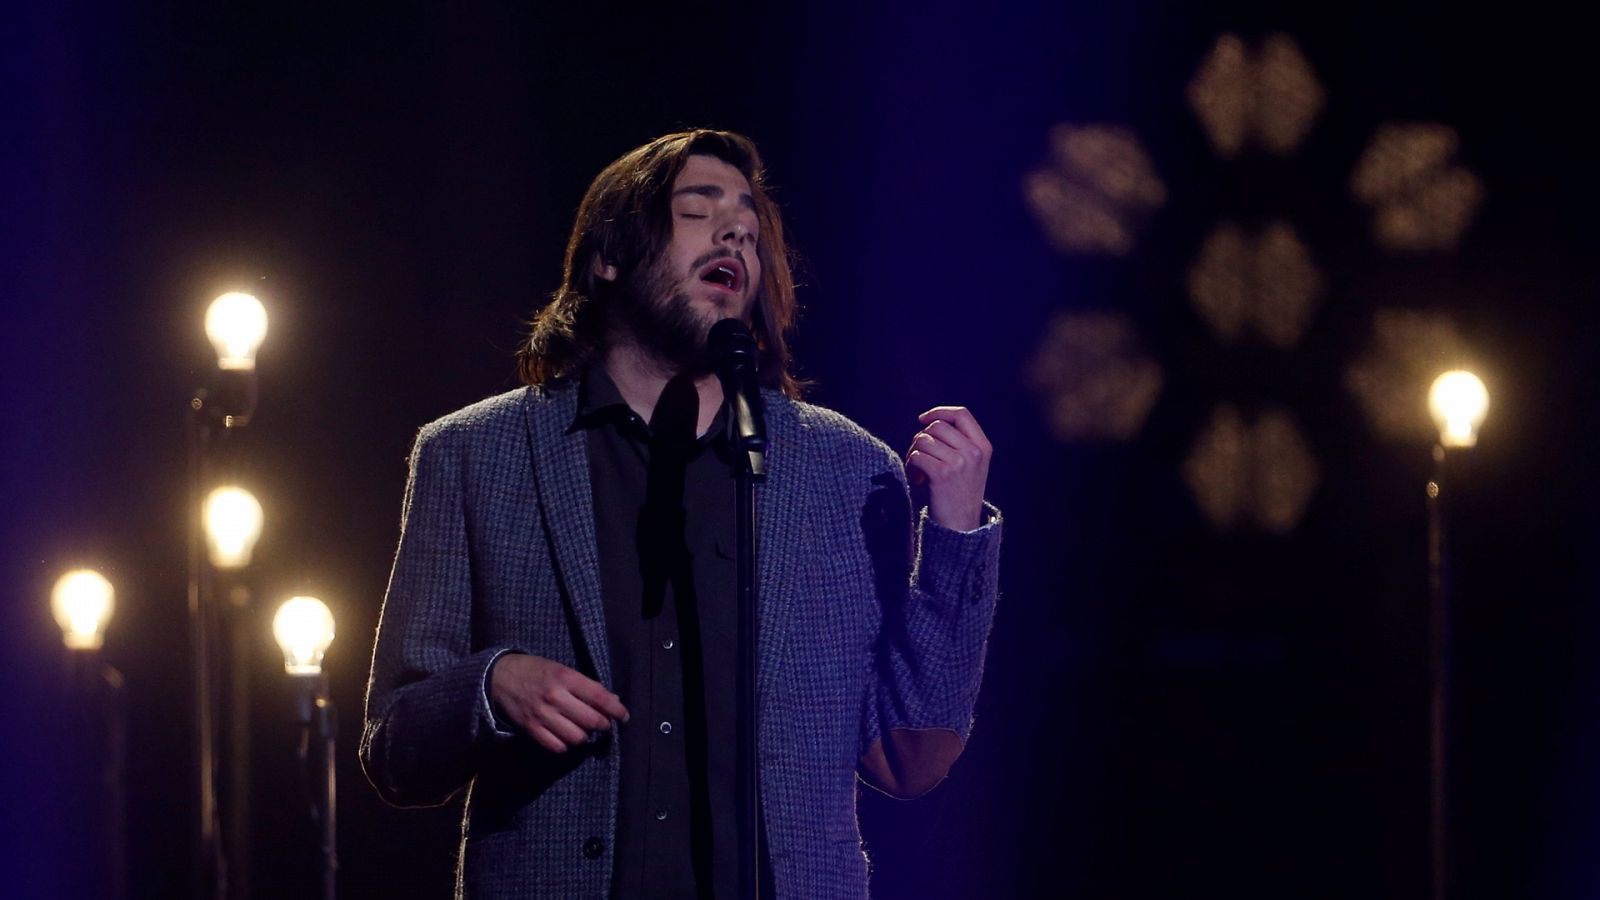 Eurovisión - Salvador Sobral canta "Mano a mano" con Júlio Resende